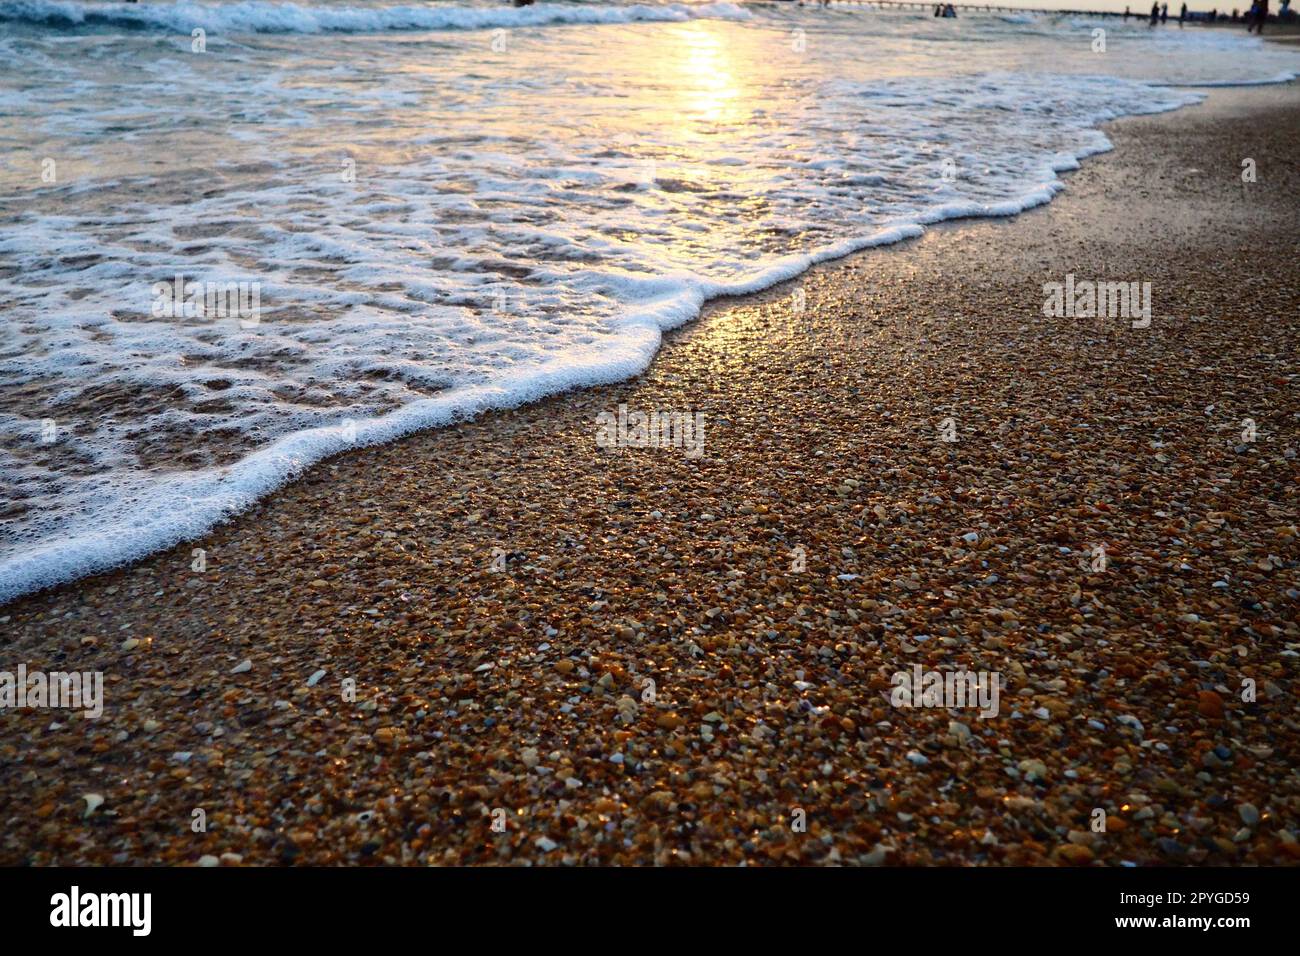 Le onde schiumose si infrangono sulla spiaggia sabbiosa. Tramonto sul mare. Bel tramonto. Luogo turistico, resort. I raggi del sole si riflettono dall'acqua. Spiaggia sabbiosa serale con conchiglie all'ora d'oro Foto Stock